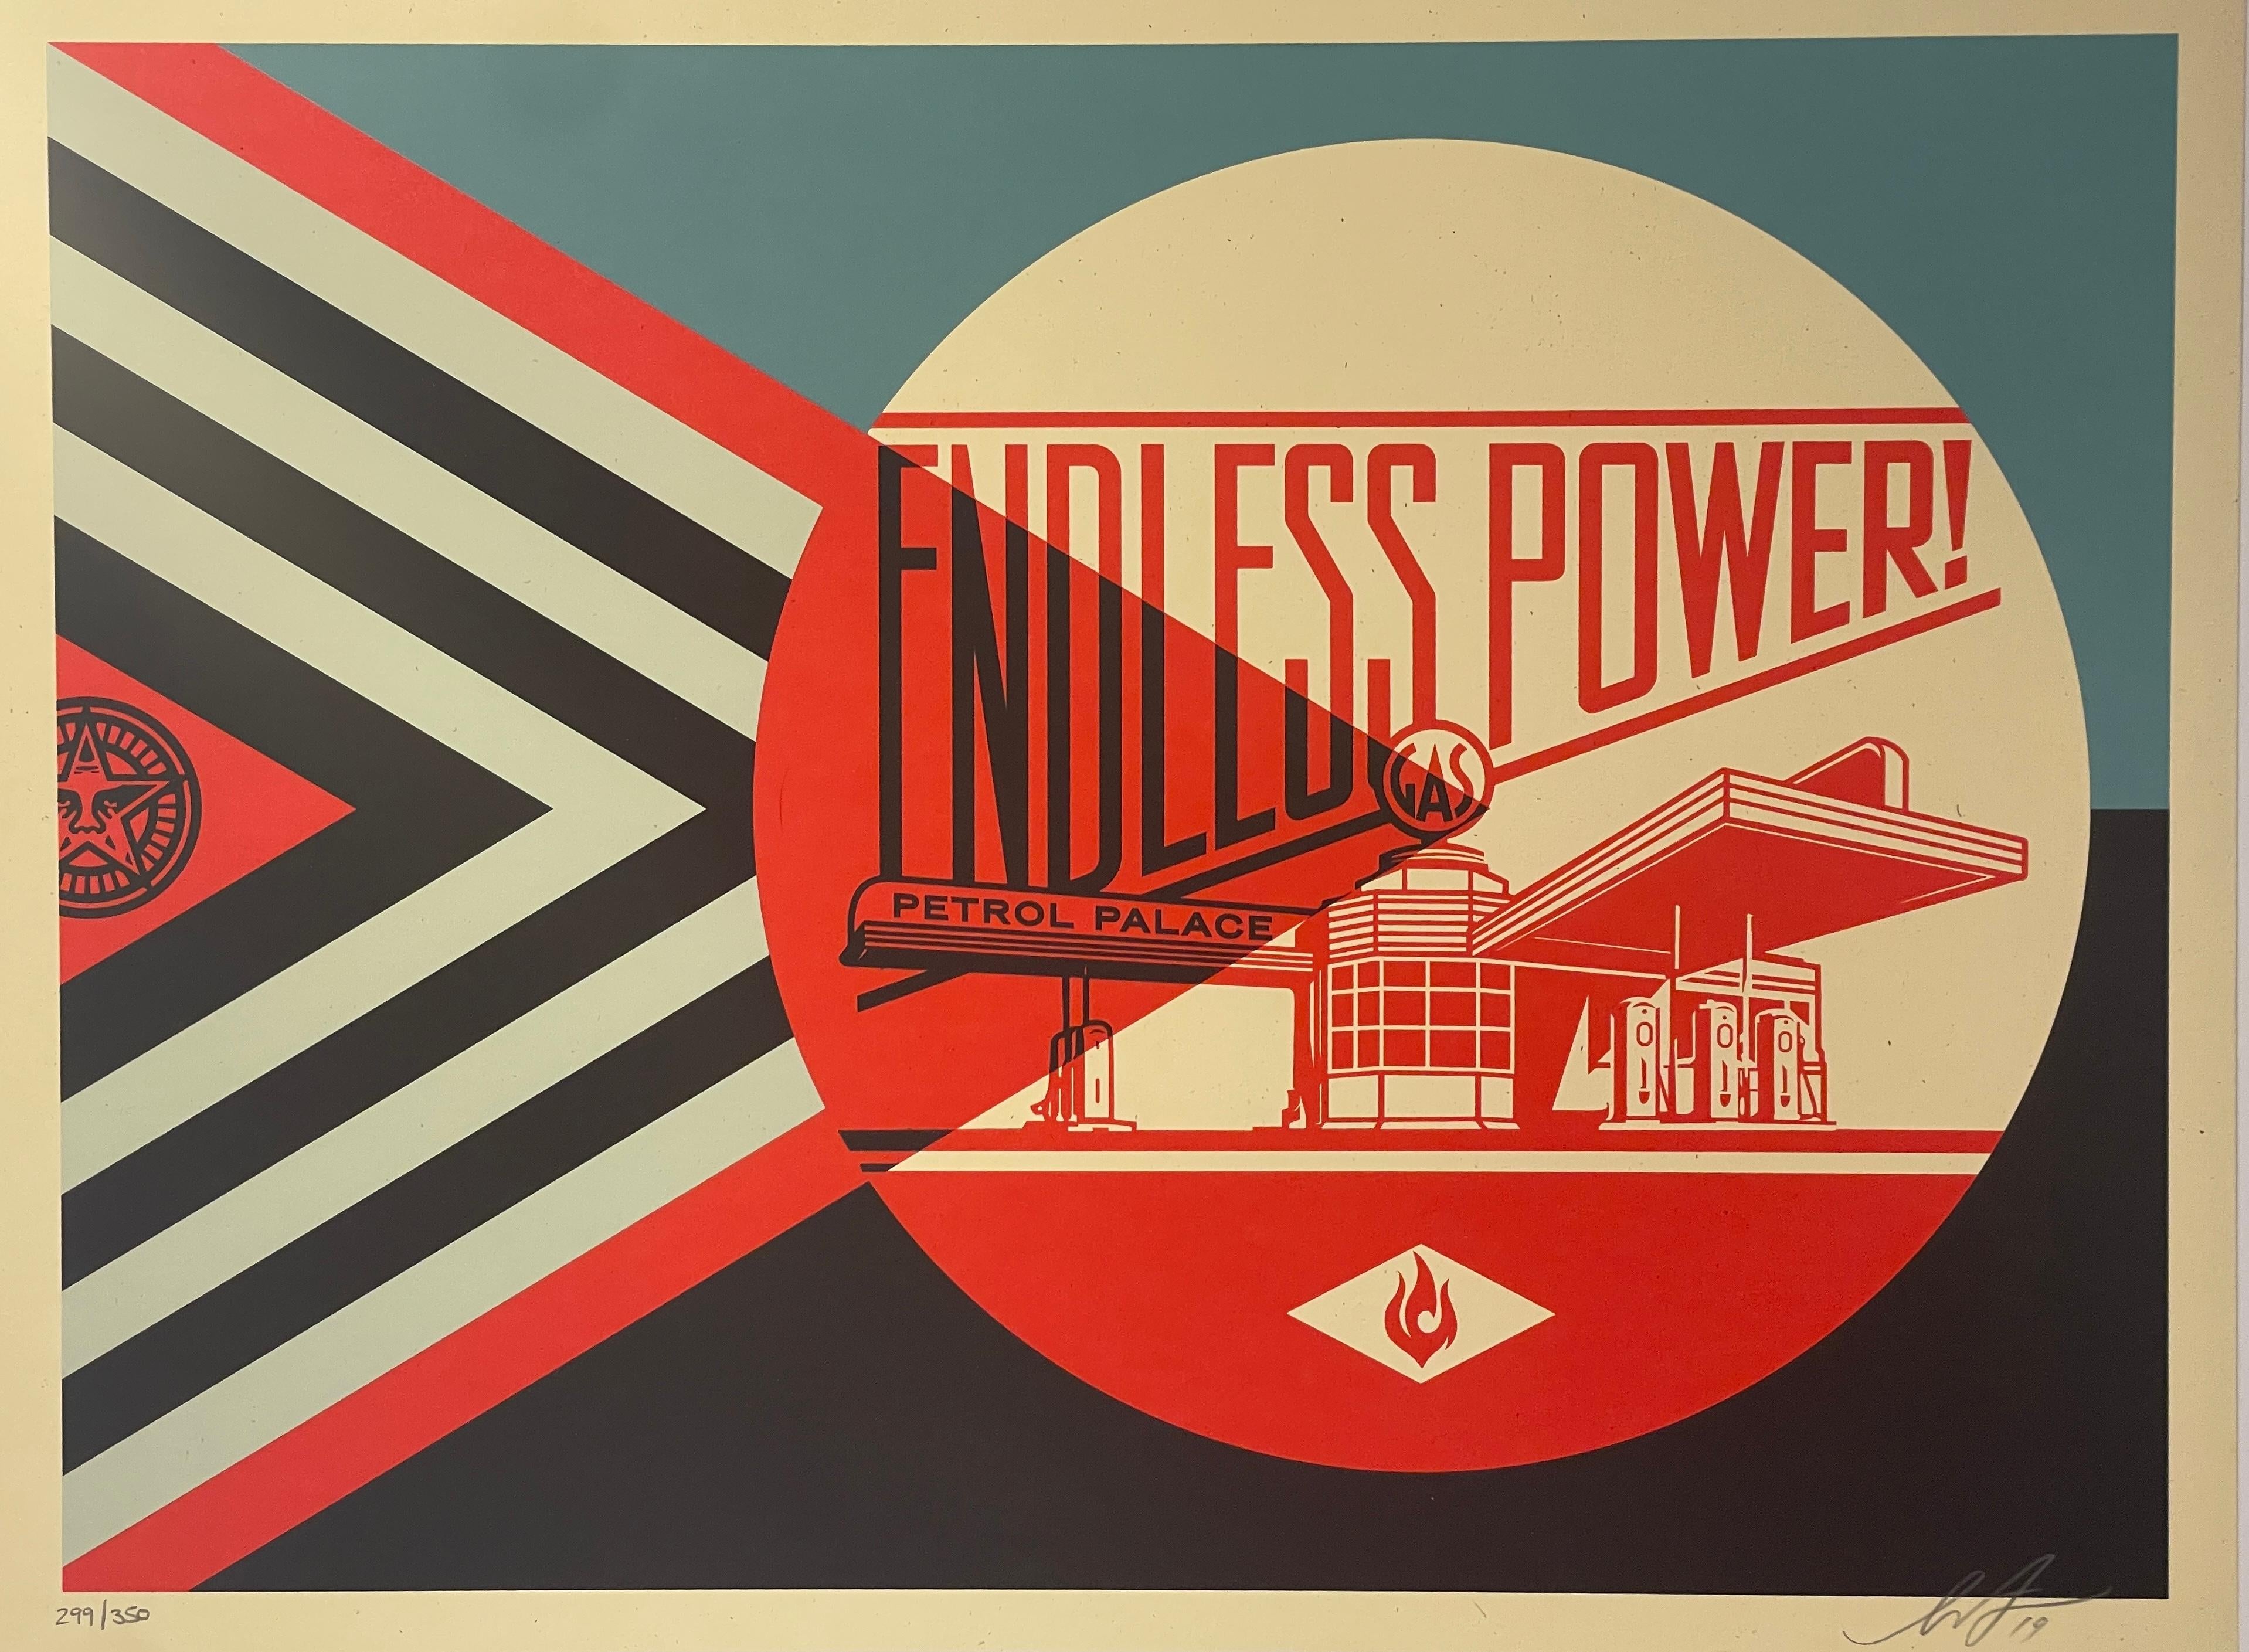 "L'affiche 'Endless Power Petrol Palace' est à la fois une célébration et une critique de la propagande graphique séduisante utilisée par l'industrie pétrolière. J'ai conçu cette impression pour qu'elle ressemble à une publicité vintage célébrant